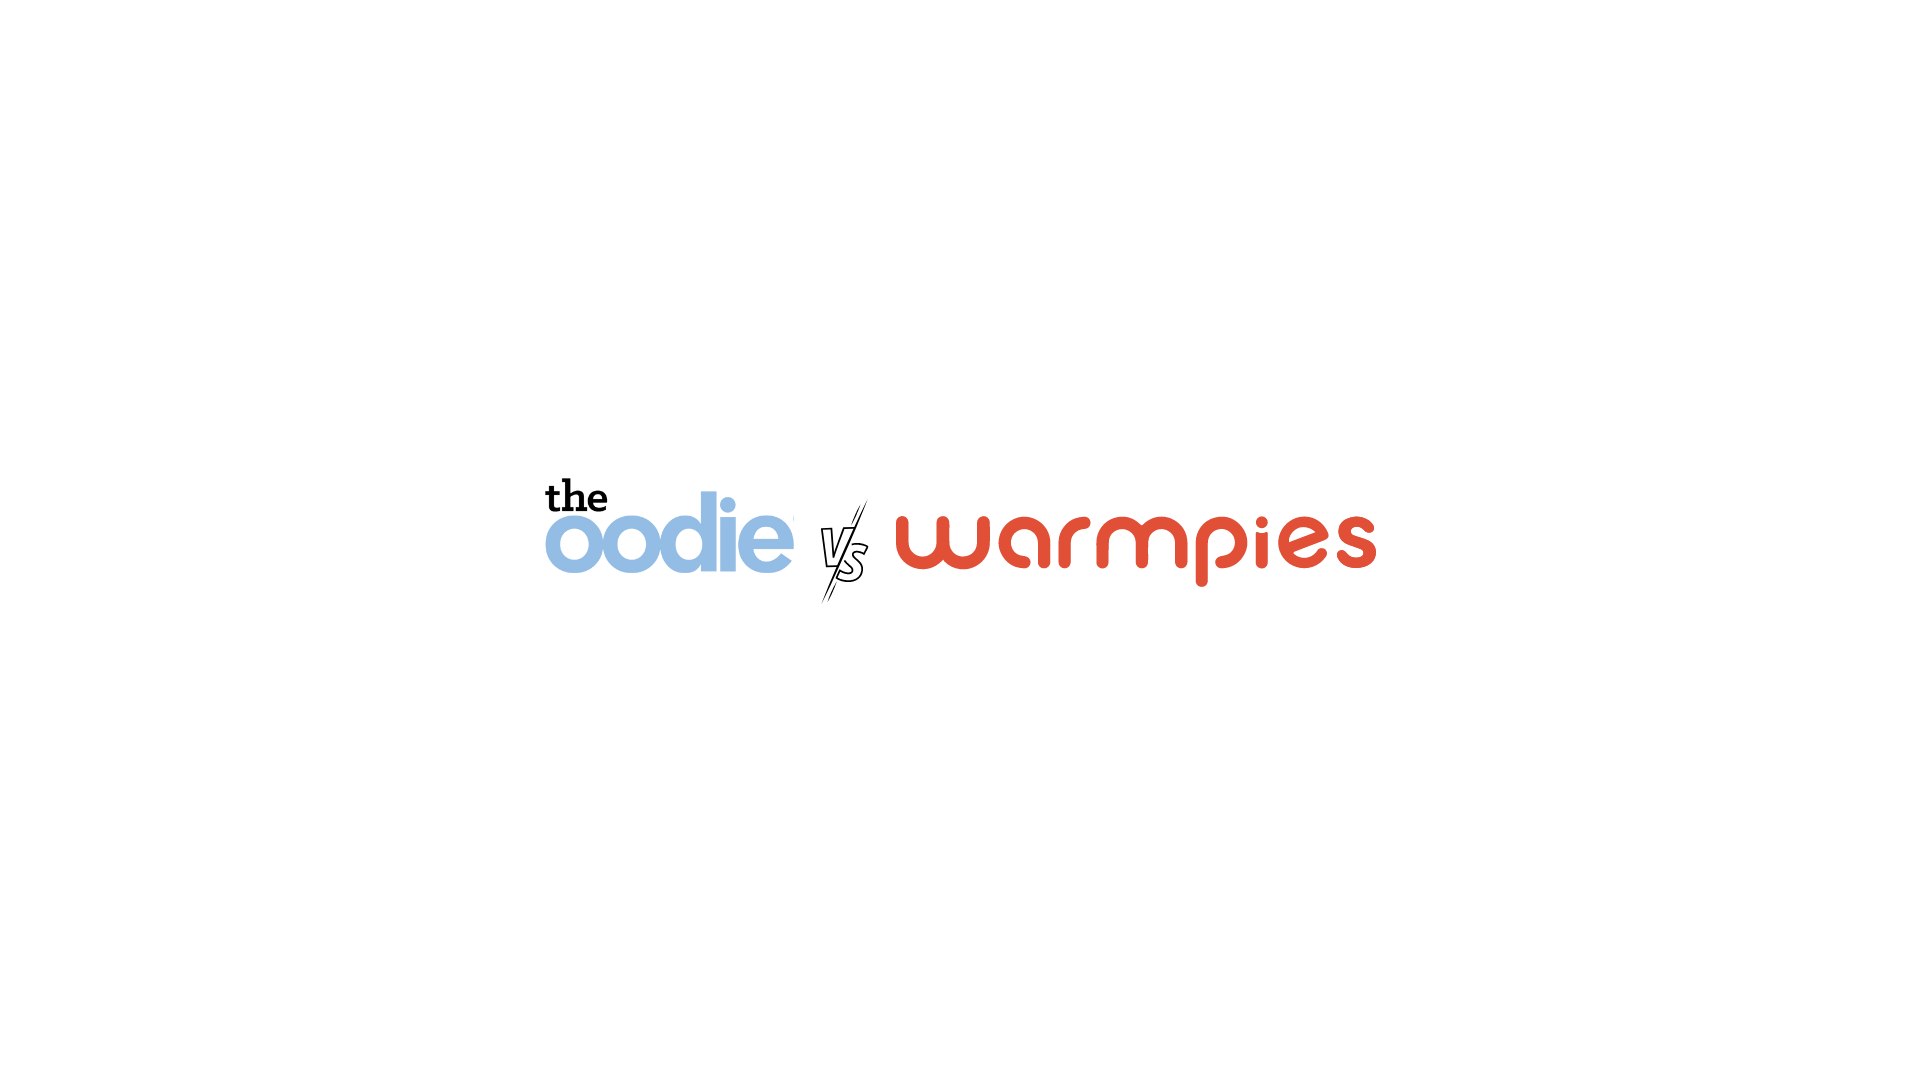 Oodie vs Warmpies vergelijking